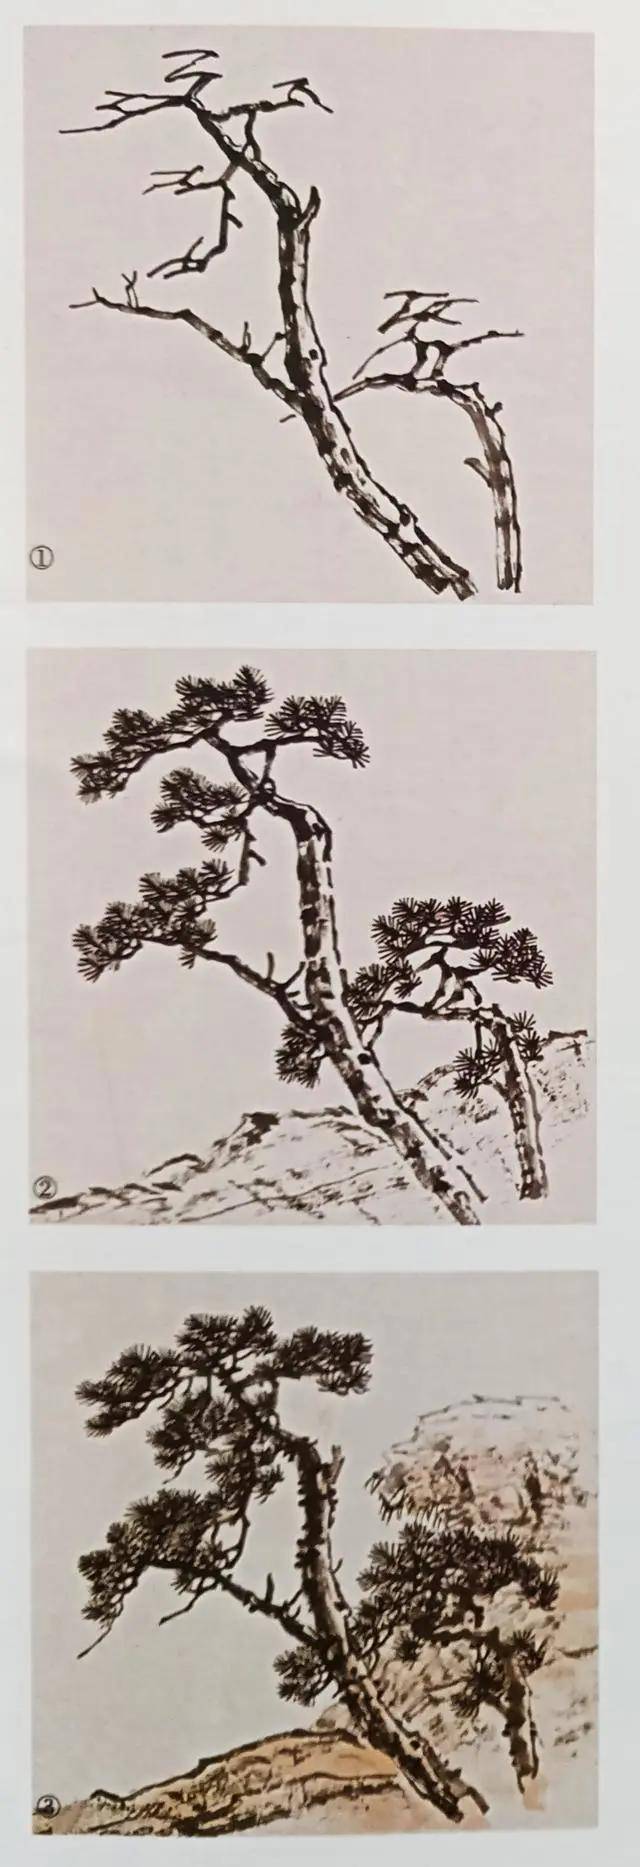 两棵松树的画法图片